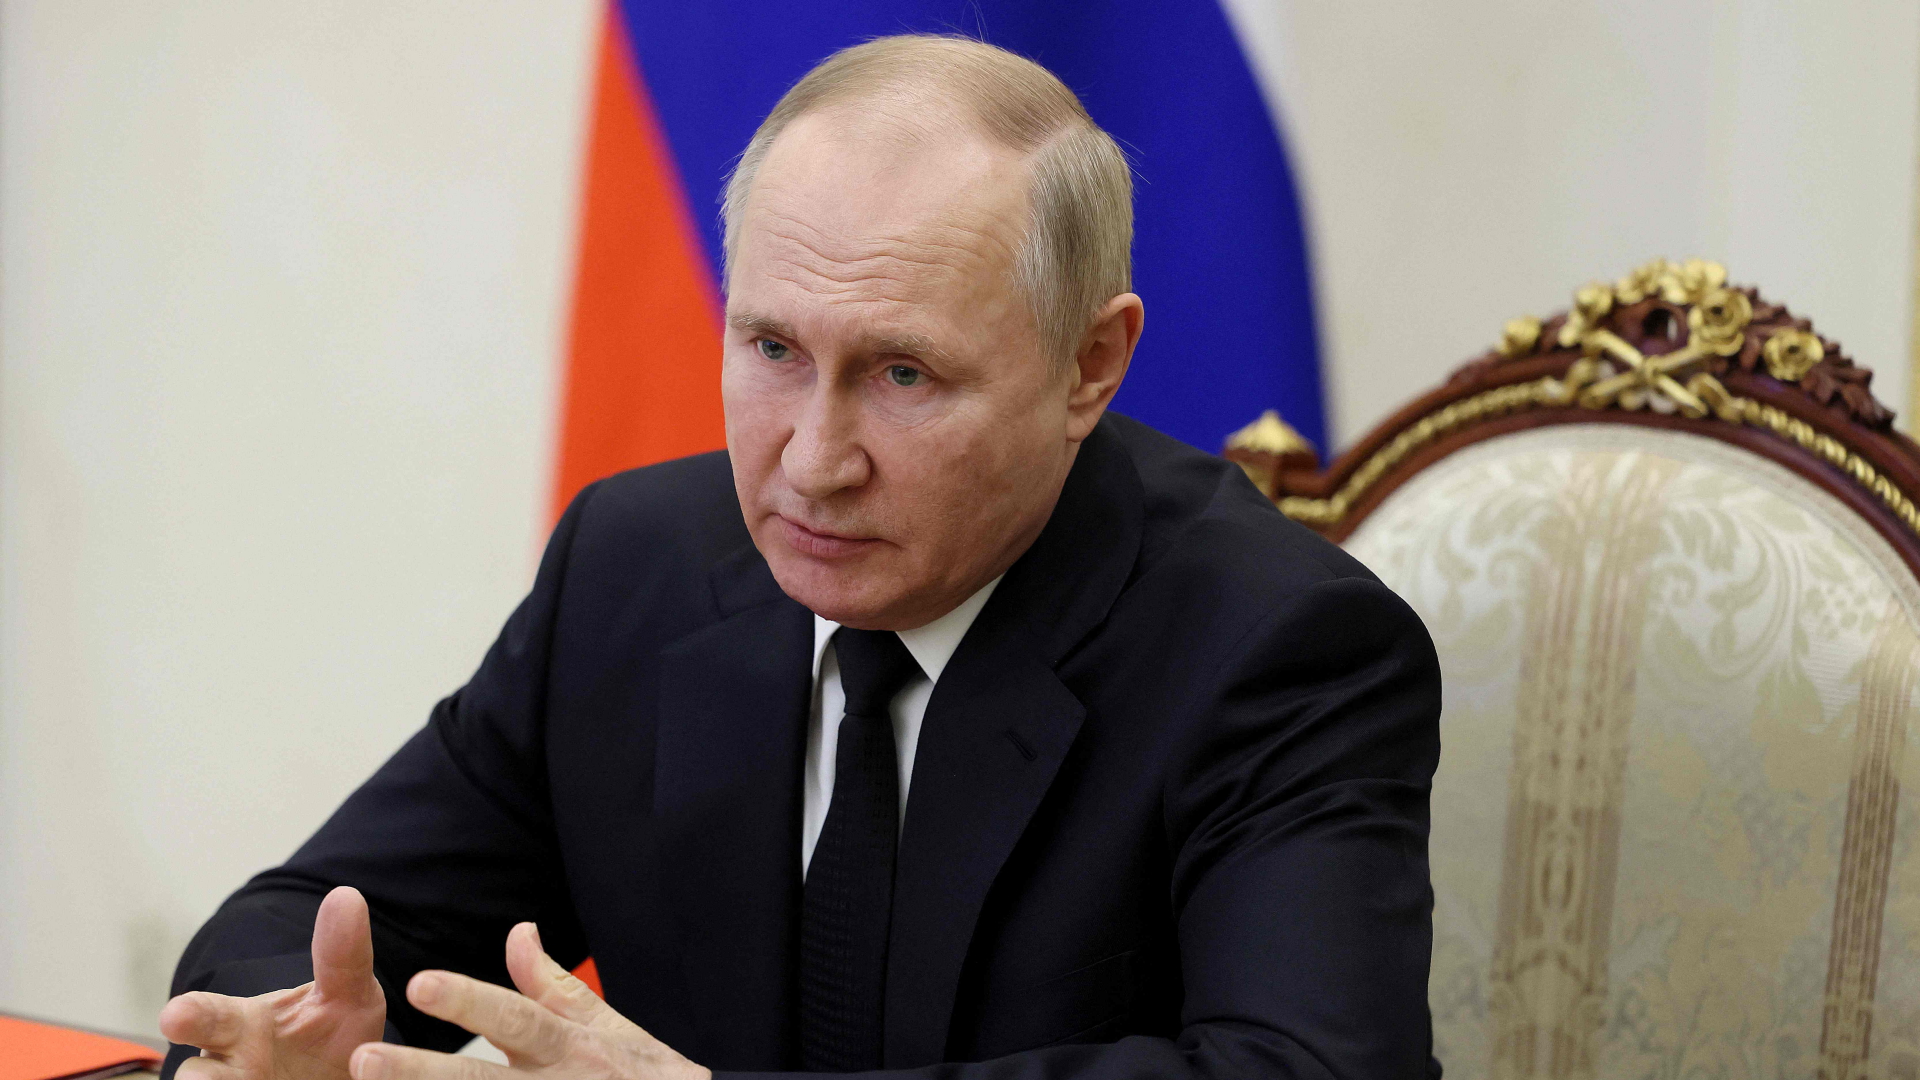 Wladimir Putin leitet eine Videositzung des russischen Sicherheitsrates am 6. Dezember 2022. Das Foto wurde von der staatlichen russischen Agentur Sputnik übermittelt. | AFP